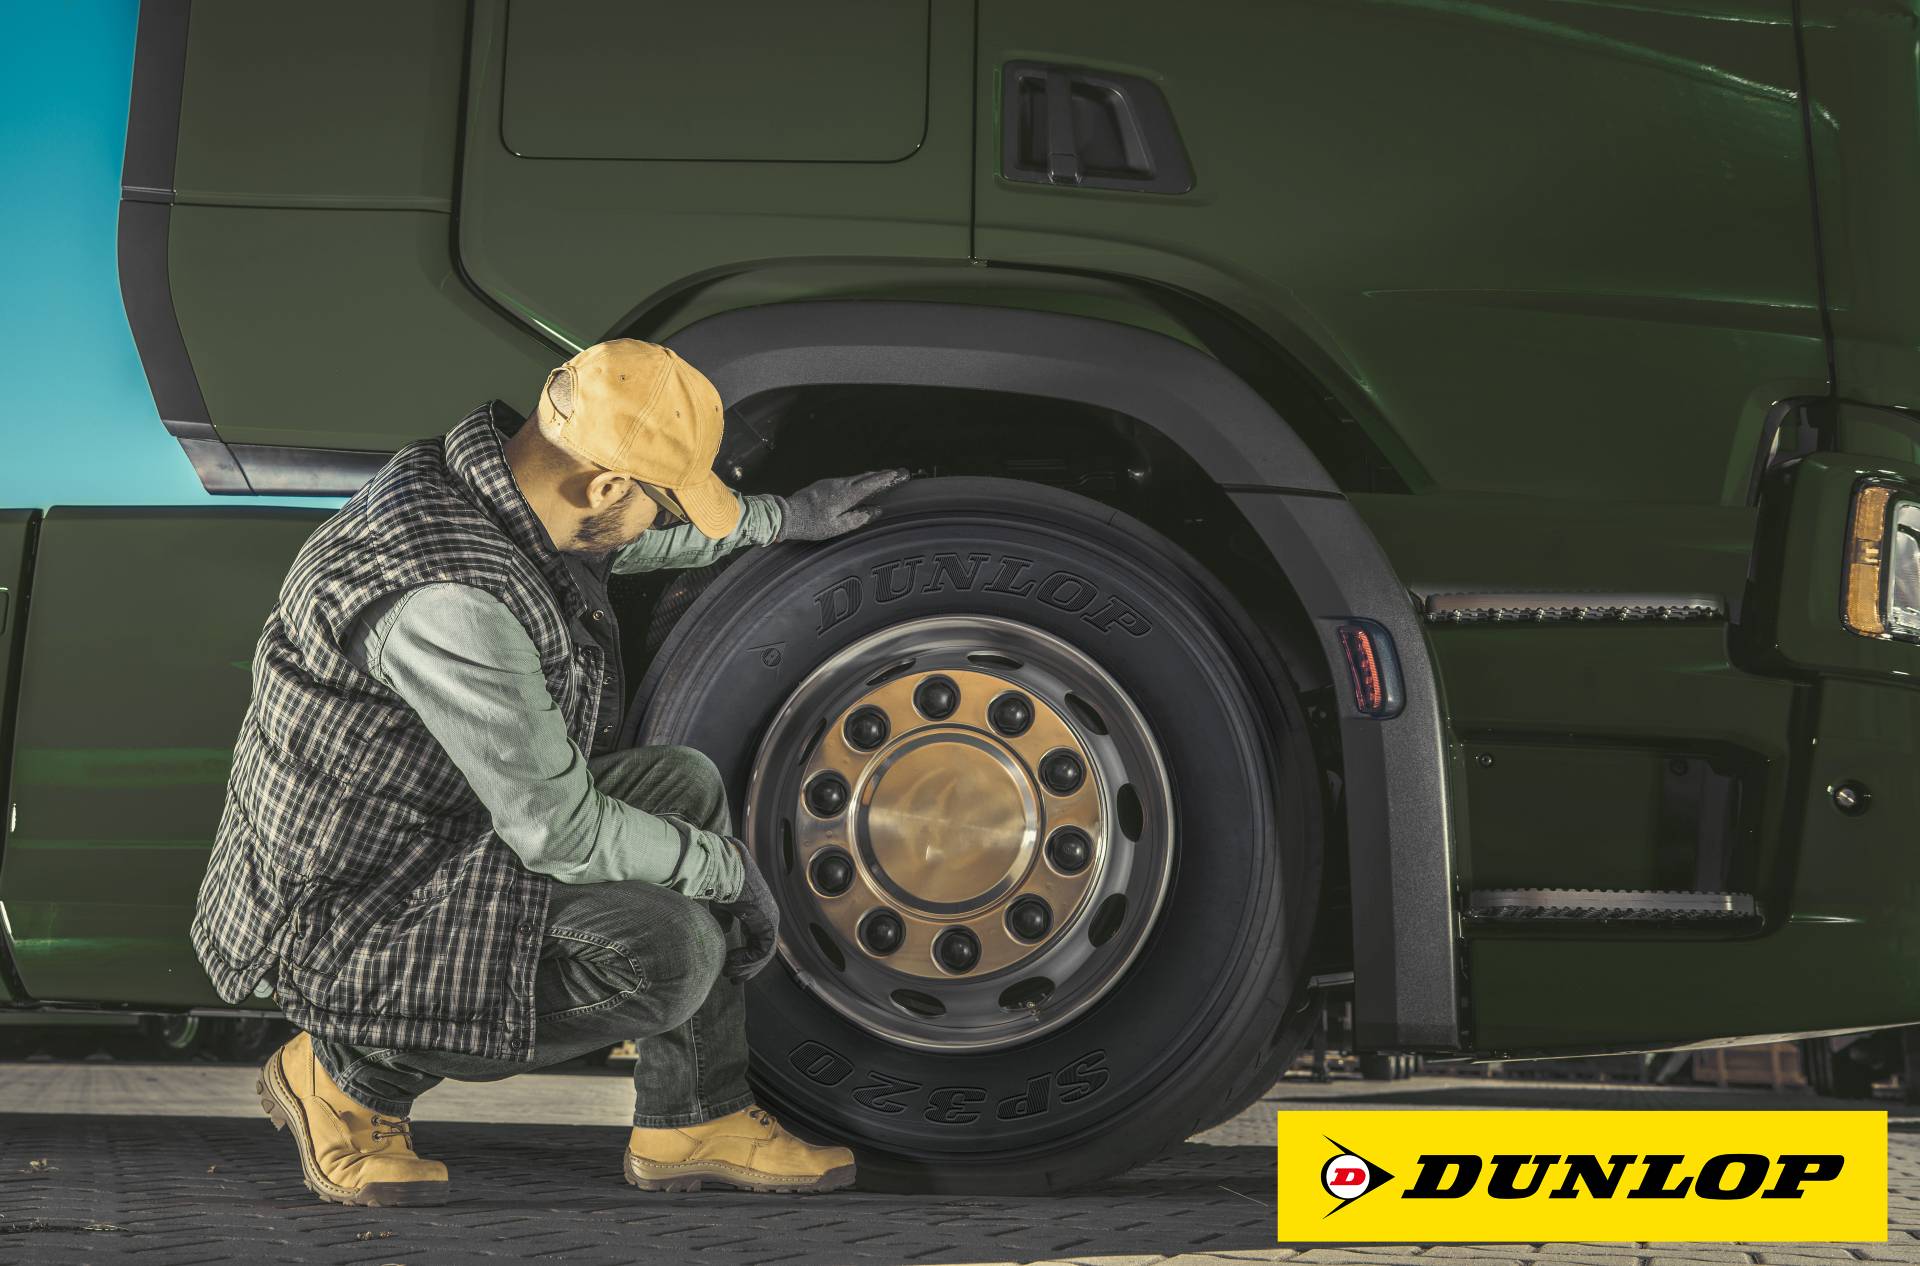 Dicas da Dunlop para comemorar o Dia do Caminhoneiro com segurança